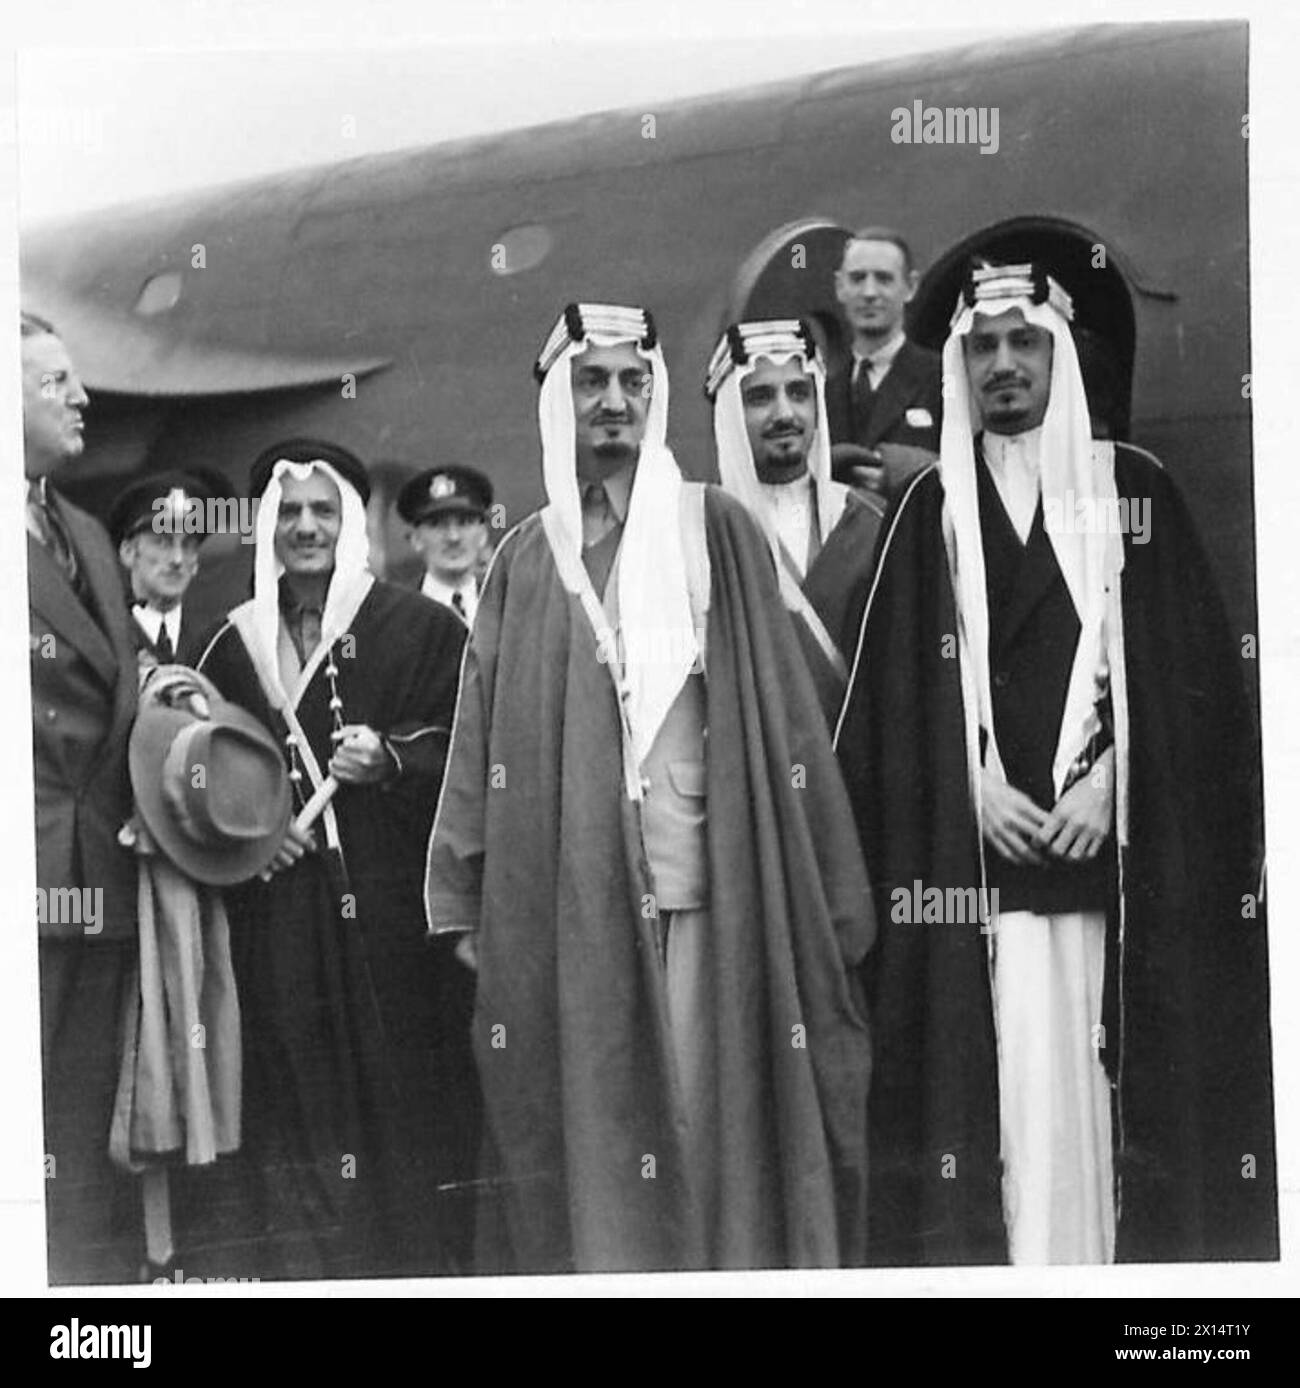 VIER EMIRE FLIEGEN ÜBER ALAMEIN - die Emirs sehen für ihren Flug kaum noch schlechter aus. Hier stehen sie neben dem Flugzeug nach dem Ausstieg Stockfoto